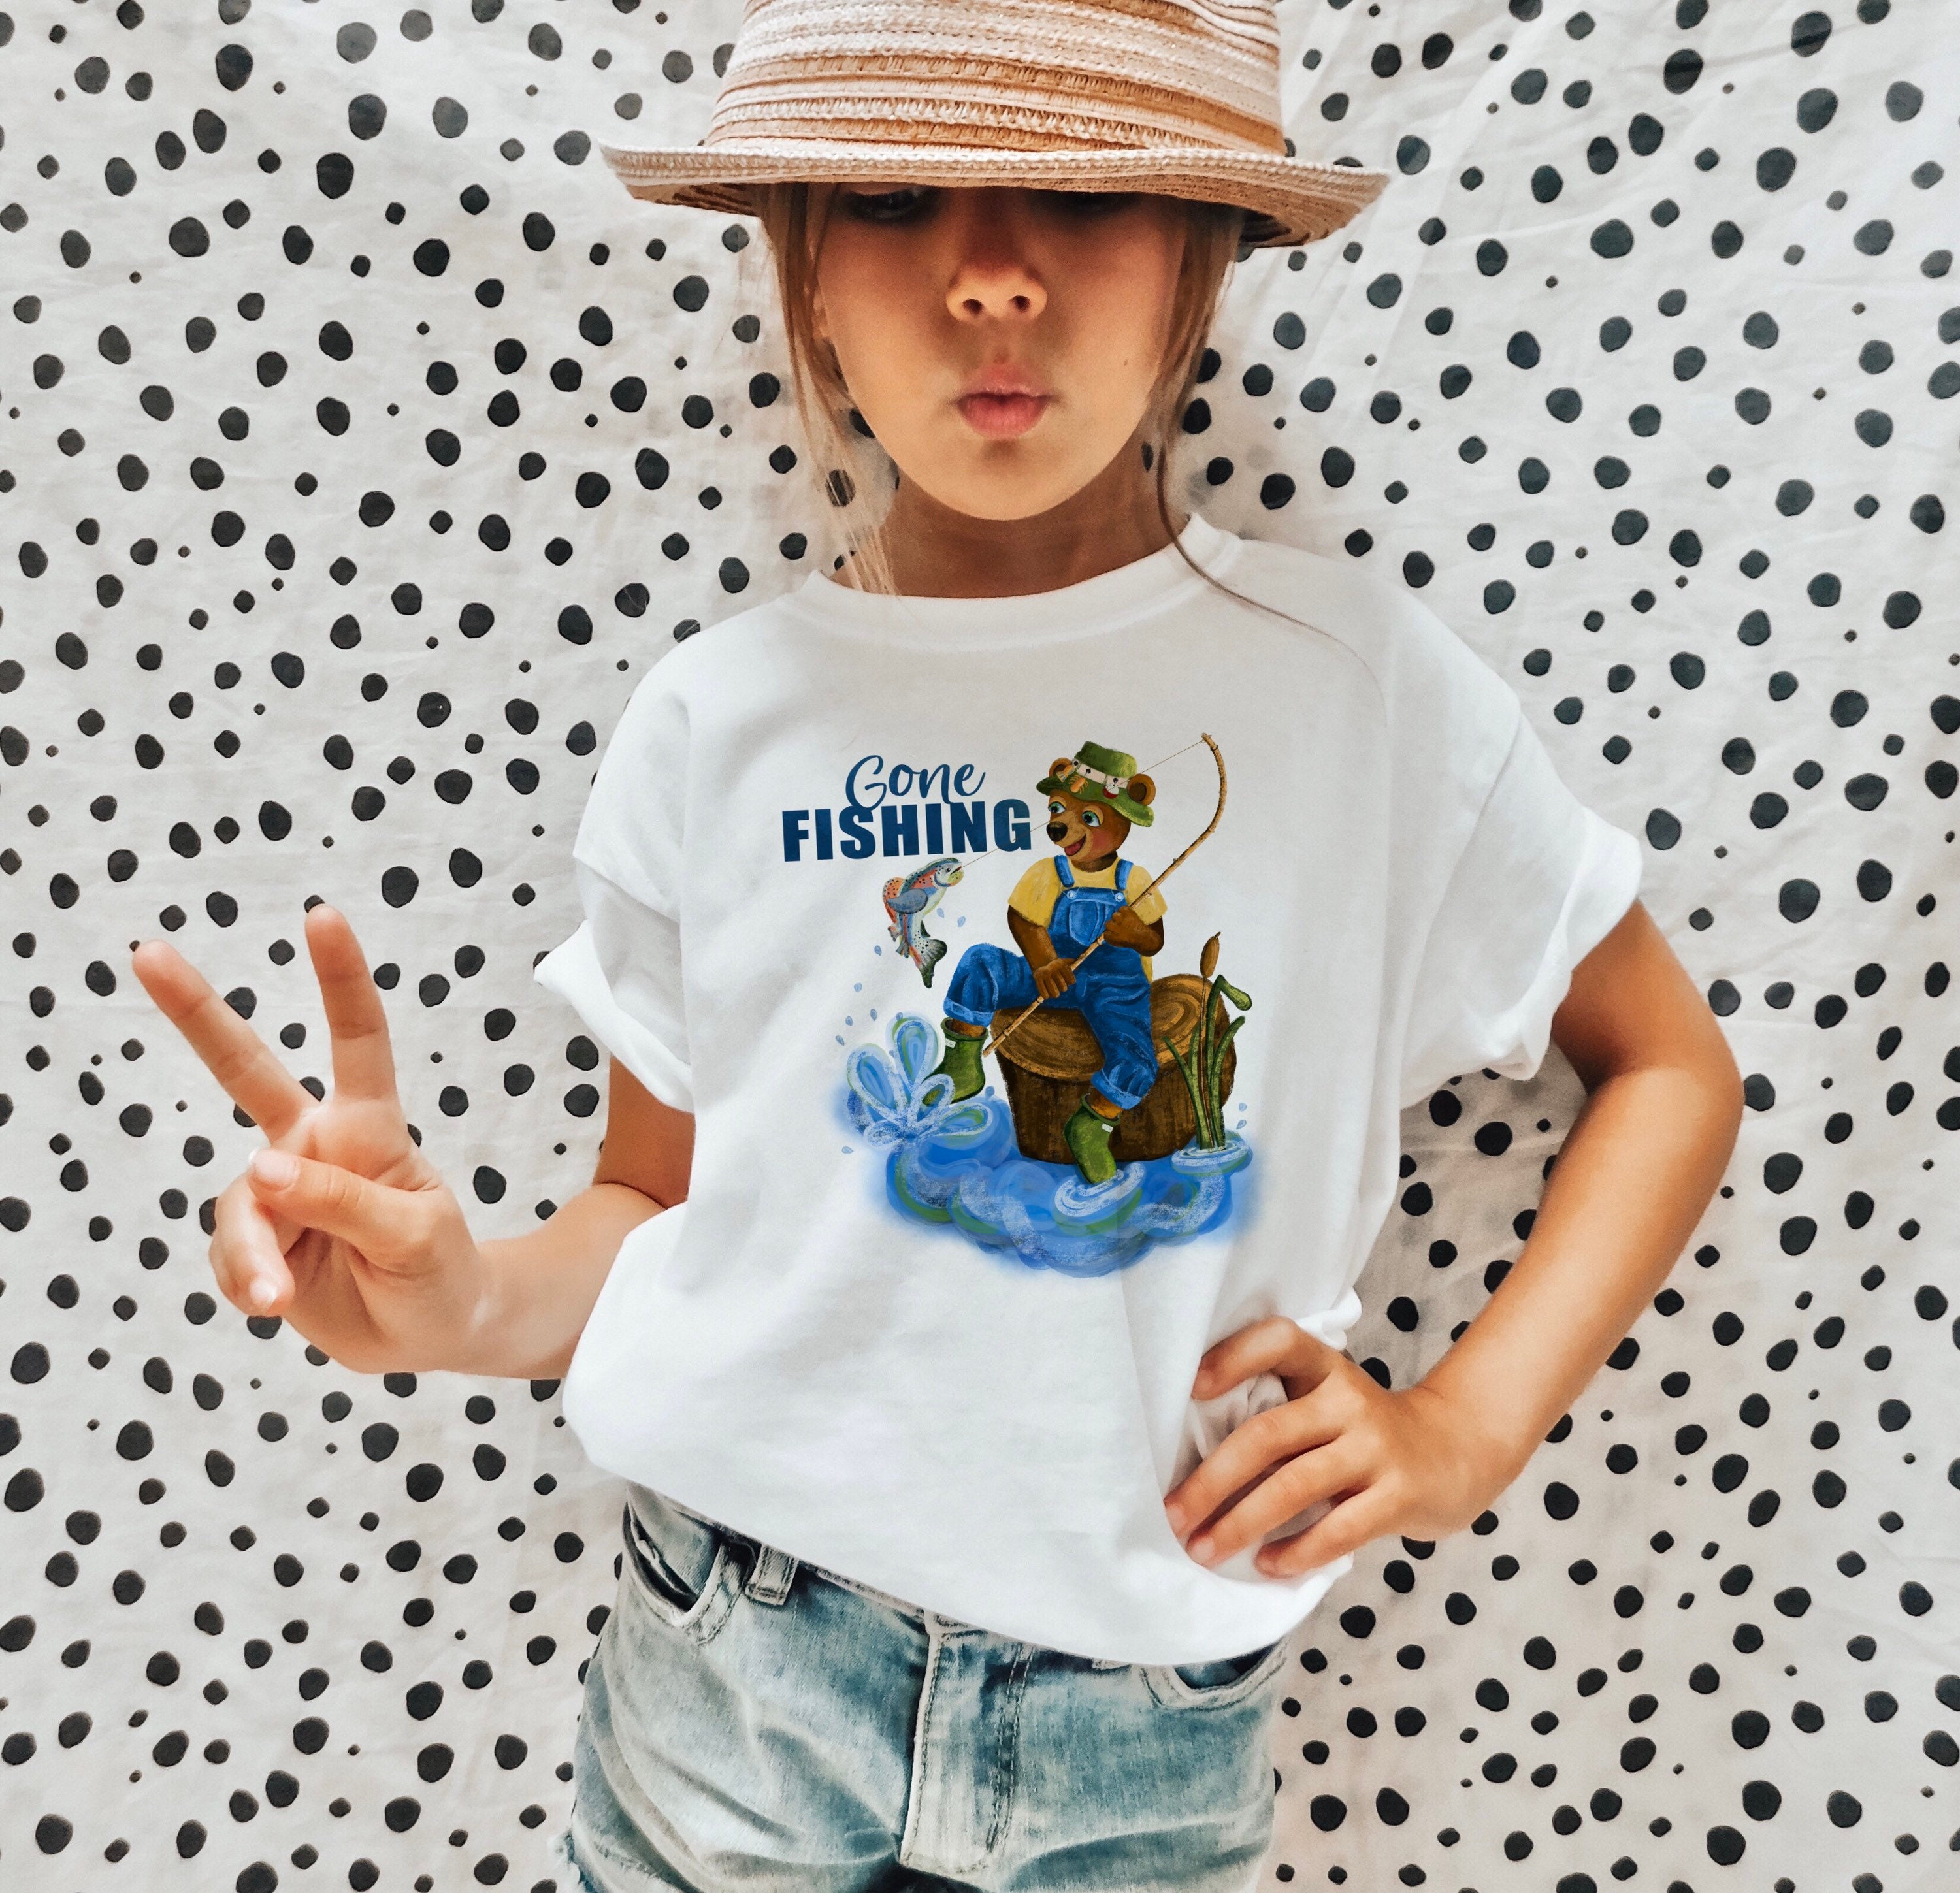 Gone Fishing Shirt for Kids, Fishing Trip Shirt, Grandson Gifts